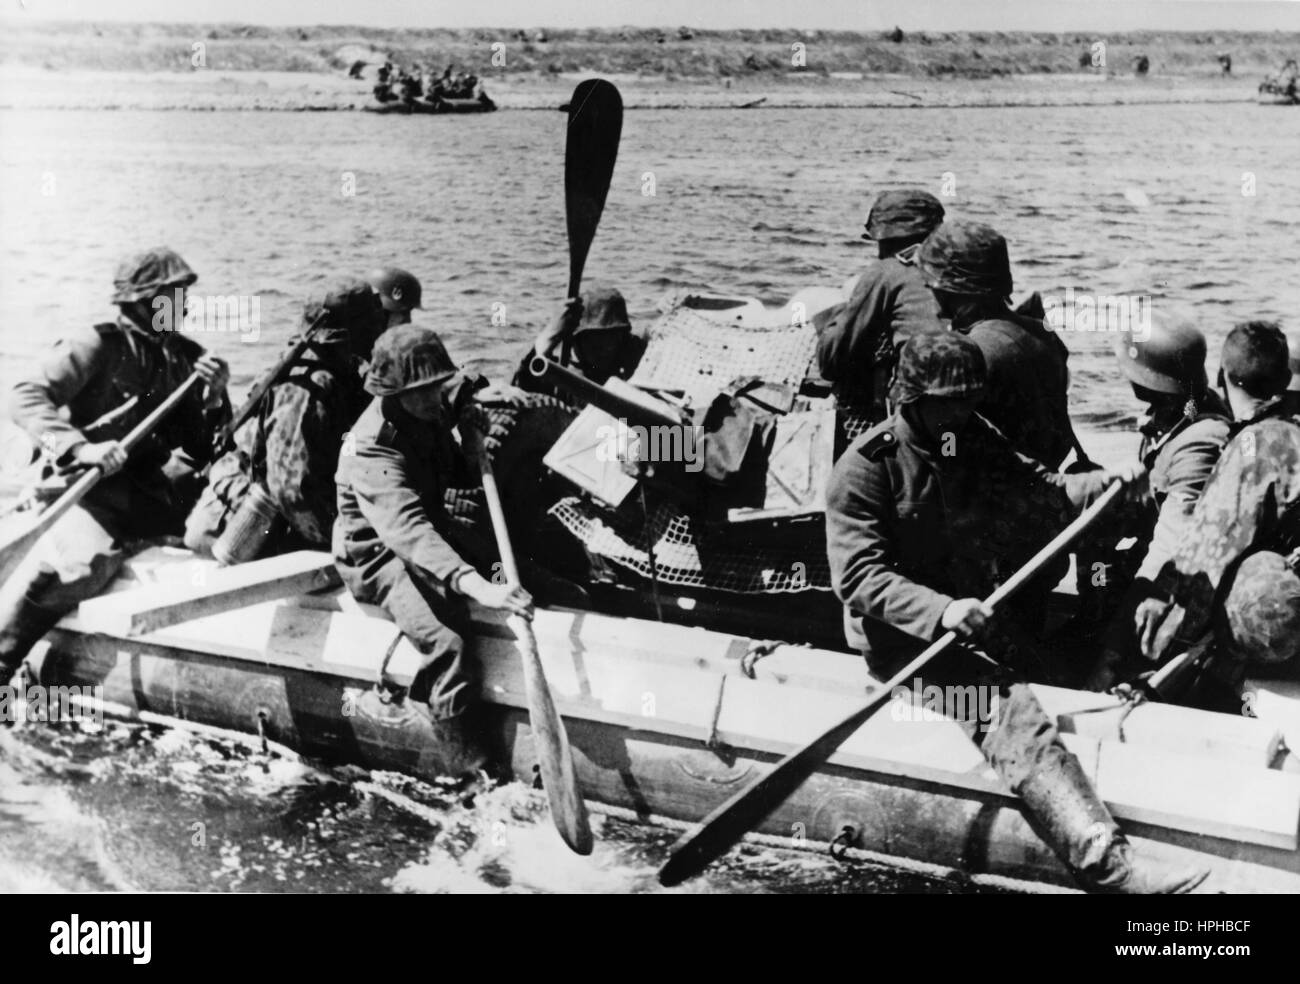 Das Bild der Nazi-Propaganda zeigt Angehörige der SS-Streitkräfte mit einer Panzerabwehrwaffe, die den Zuid-Bevelands-Kanal in den Niederlanden auf einem Luftboot durchqueren. Veröffentlicht im Mai 1941. Fotoarchiv für Zeitgeschichte - NICHT FÜR DEN KABELDIENST - | weltweite Verwendung Stockfoto